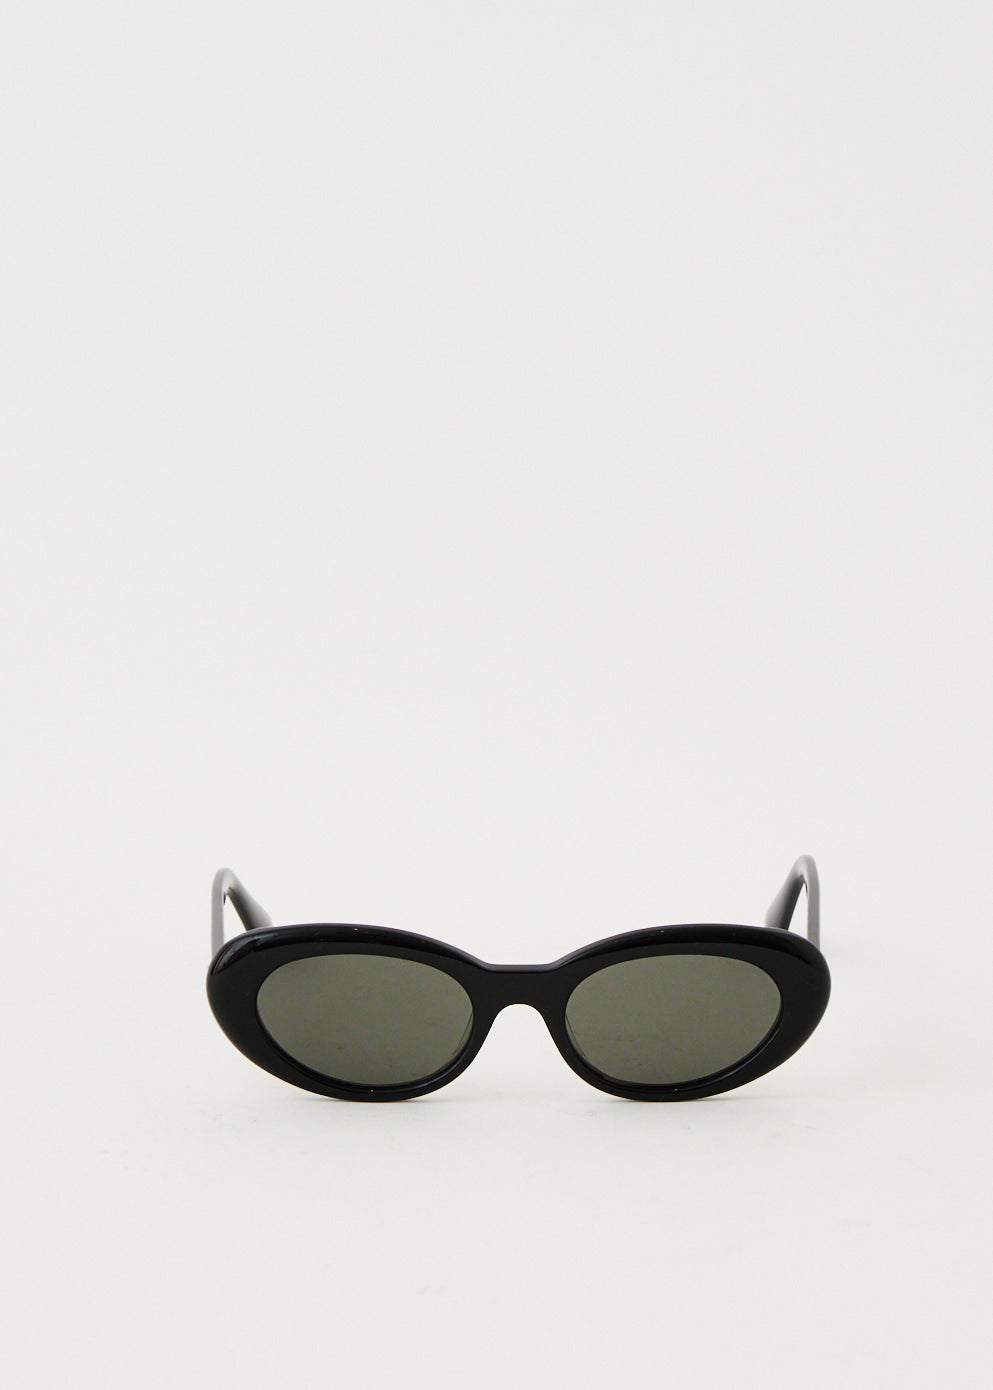 Le 01 Sunglasses